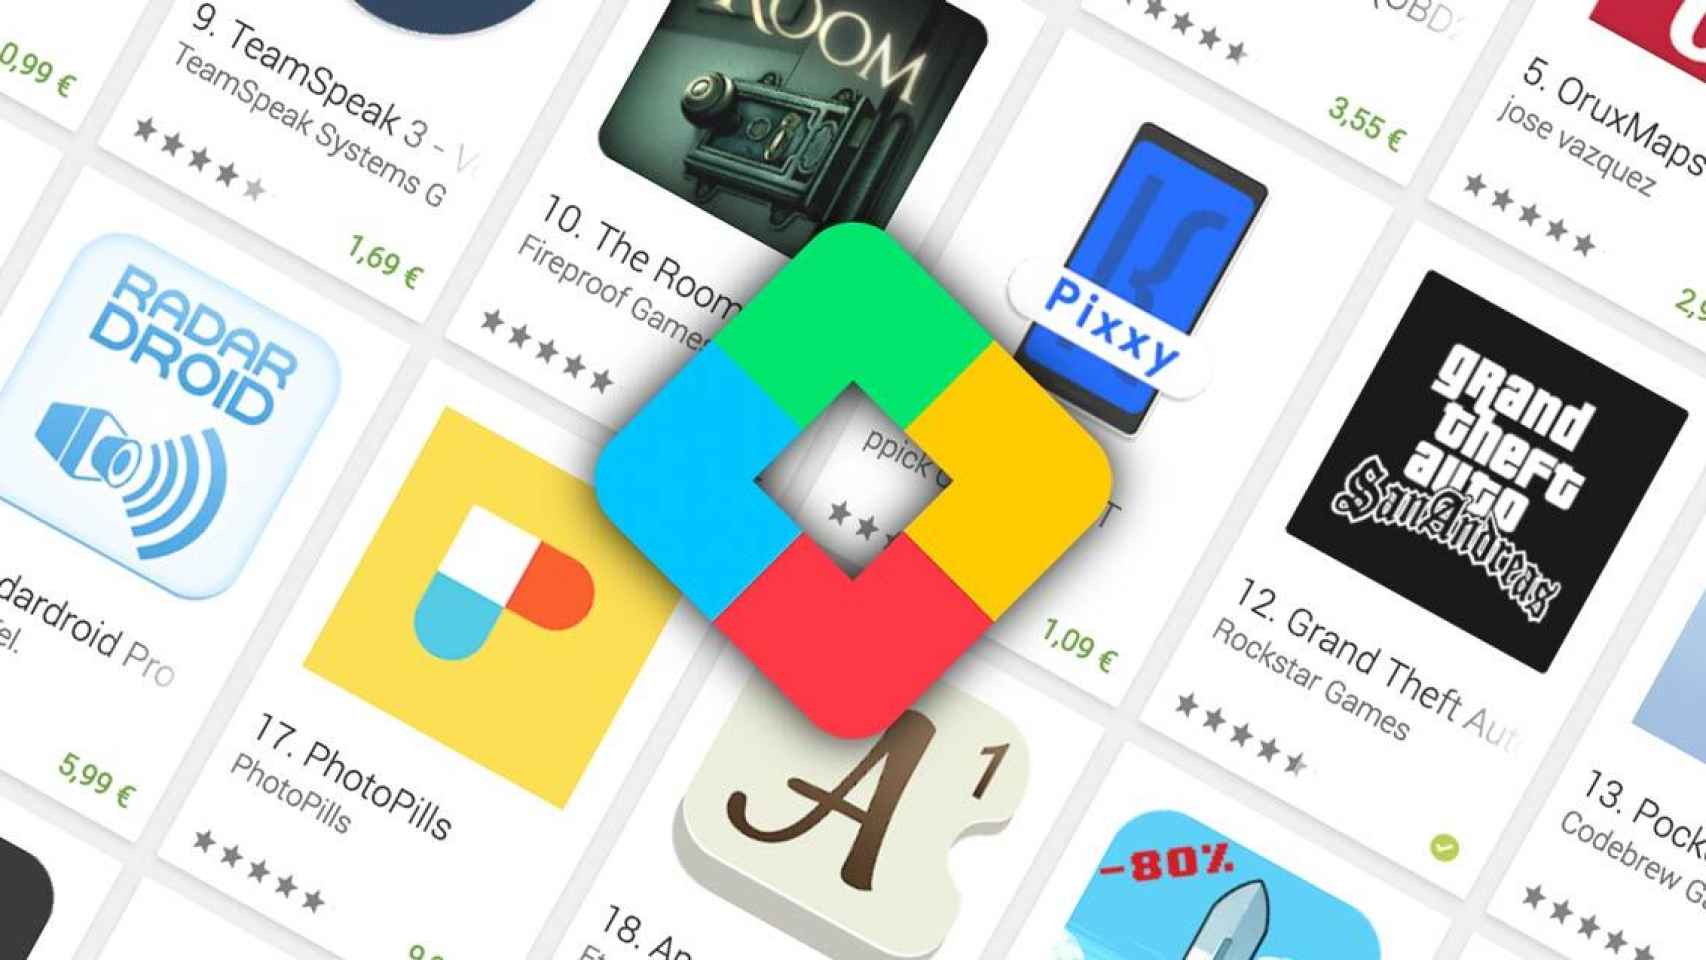 Gana puntos comprando aplicaciones, Google Play premiará tu fidelidad